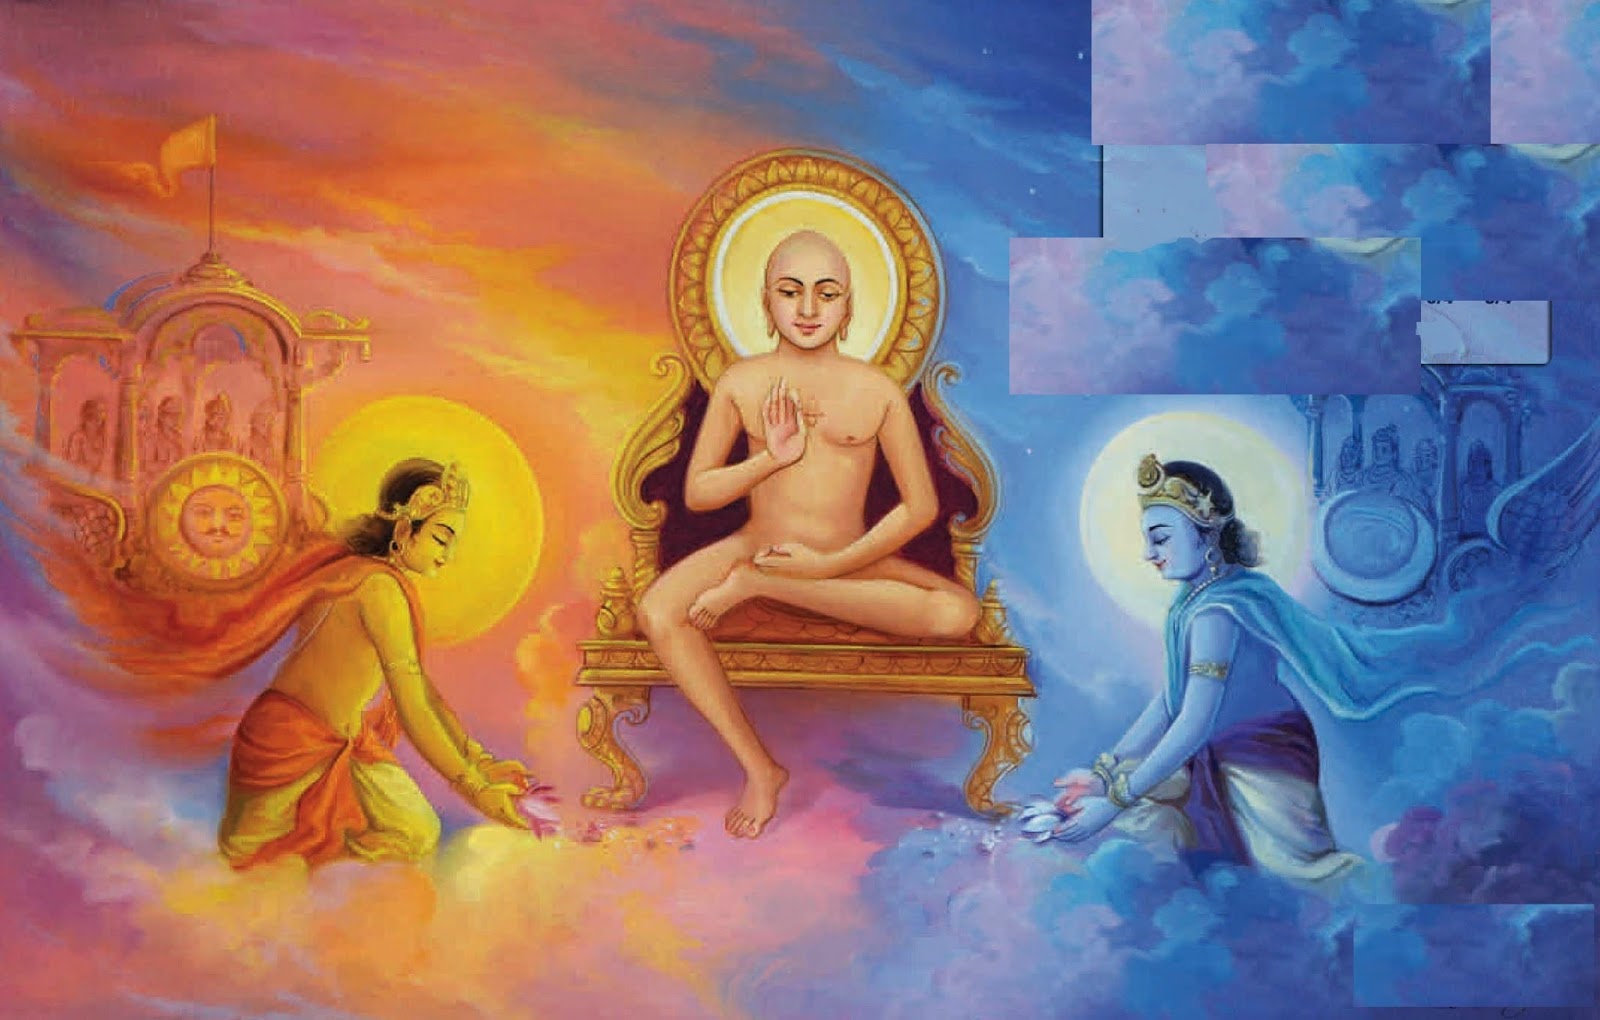 Happy Mahavir Jayanti HD Wallpapers and Images Mahavir+God sun & moon